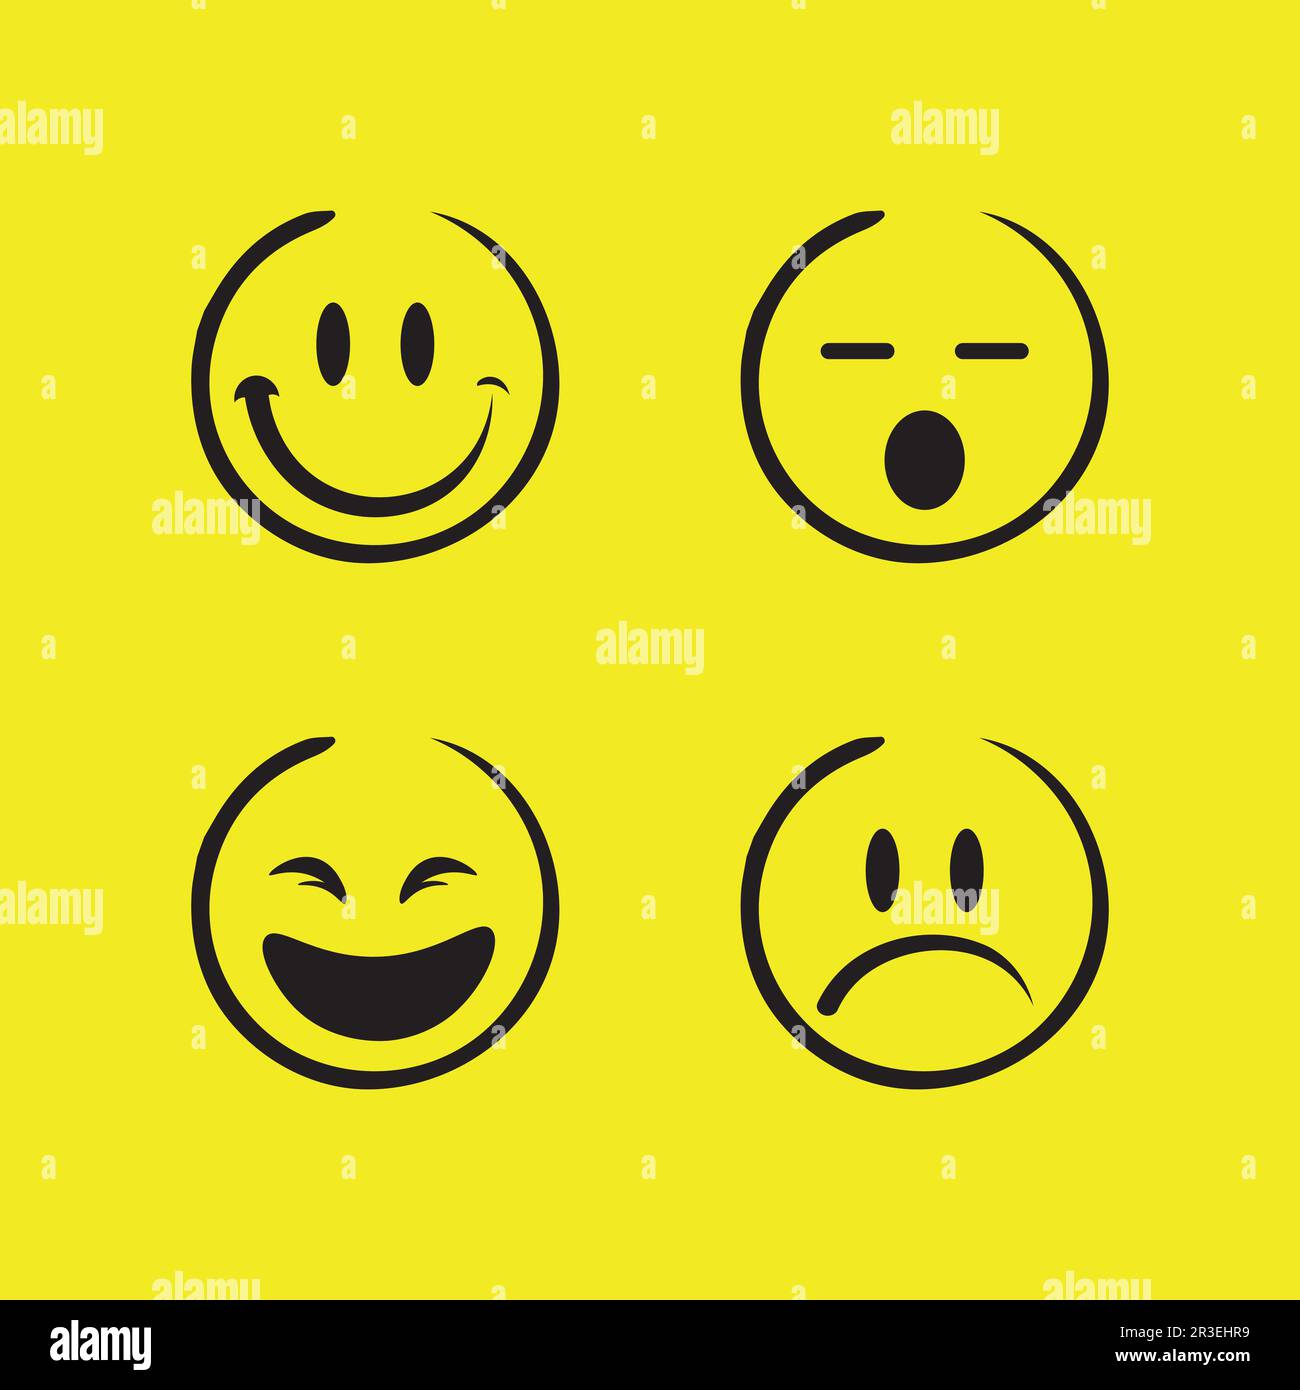 smiley face logo design